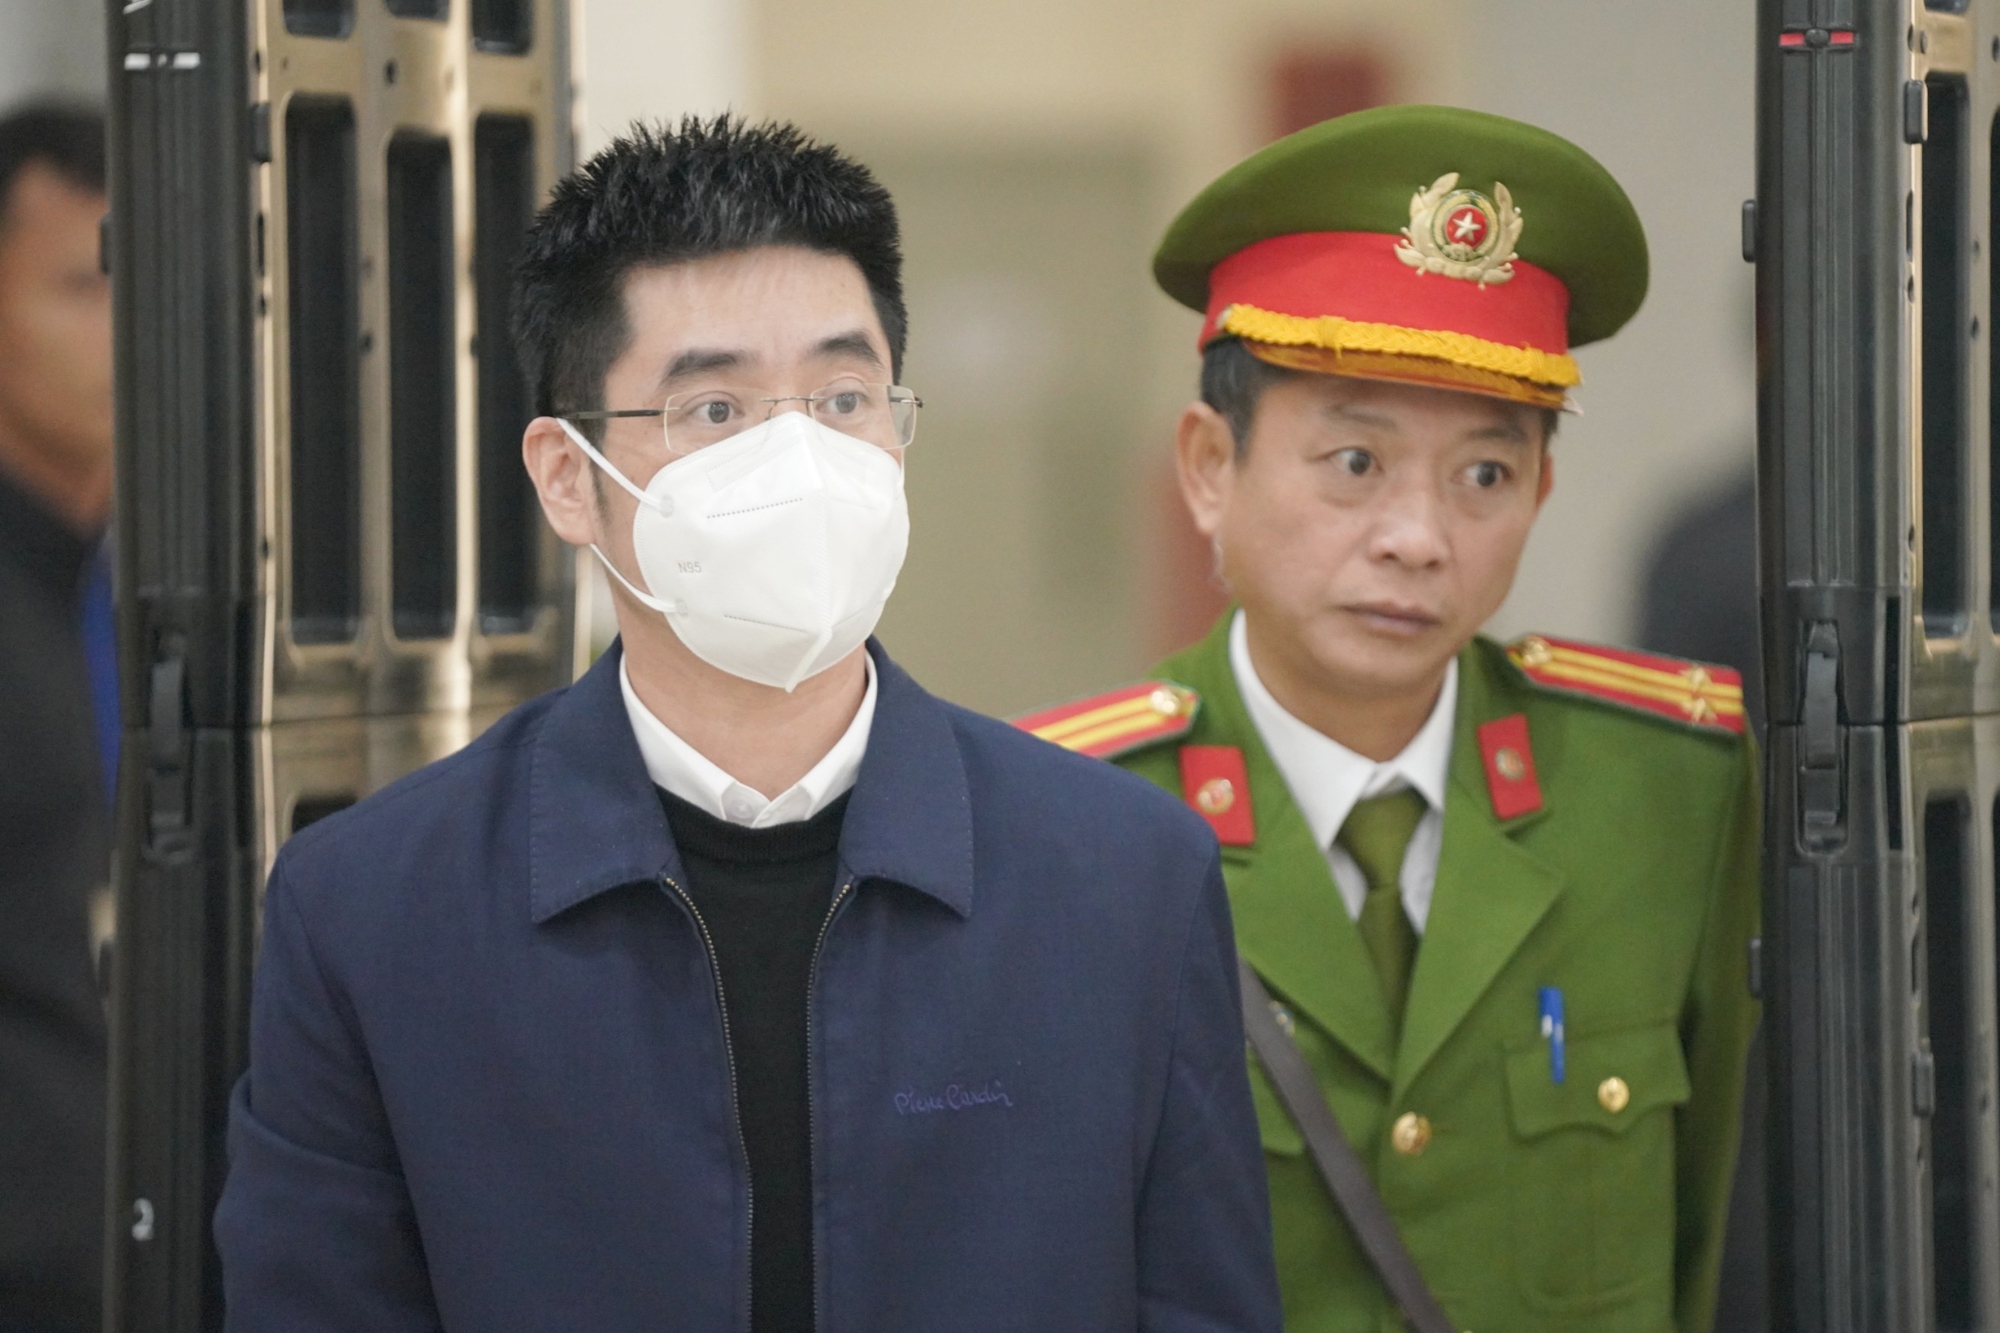 Chuyến bay giải cứu: Hoàng Văn Hưng được giảm án còn 20 năm tù - Ảnh 1.